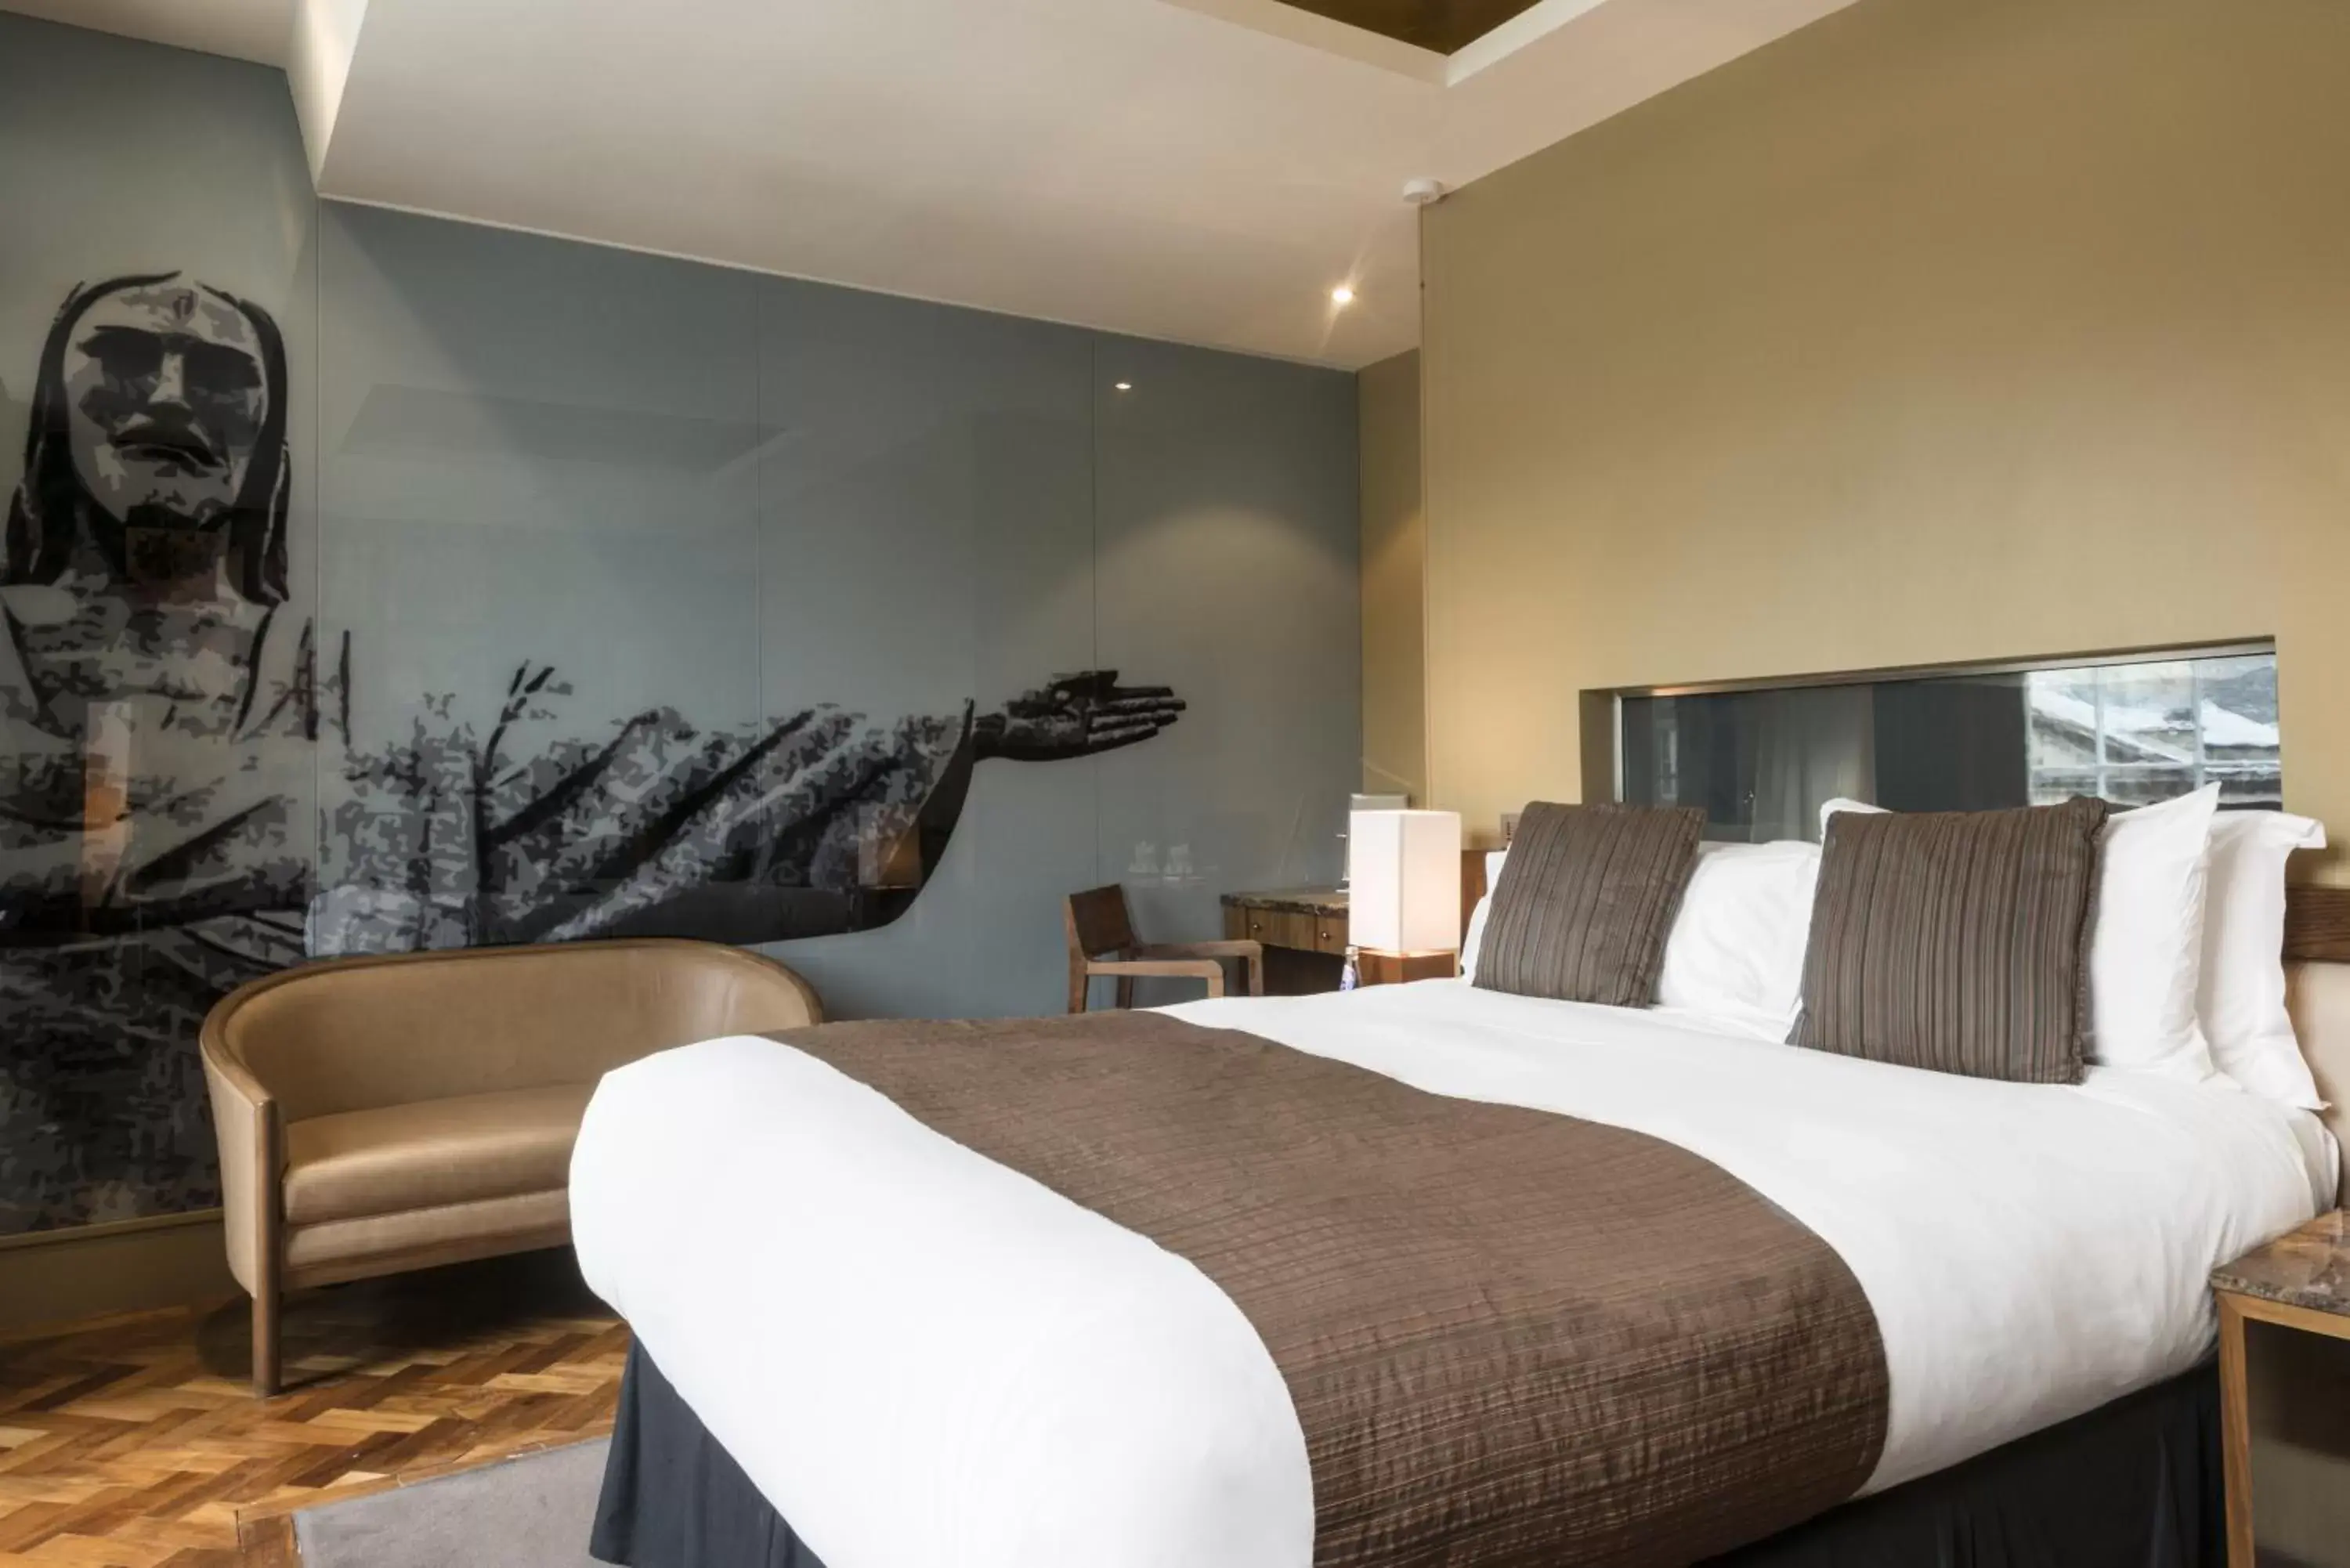 Bedroom, Bed in Le Monde Hotel